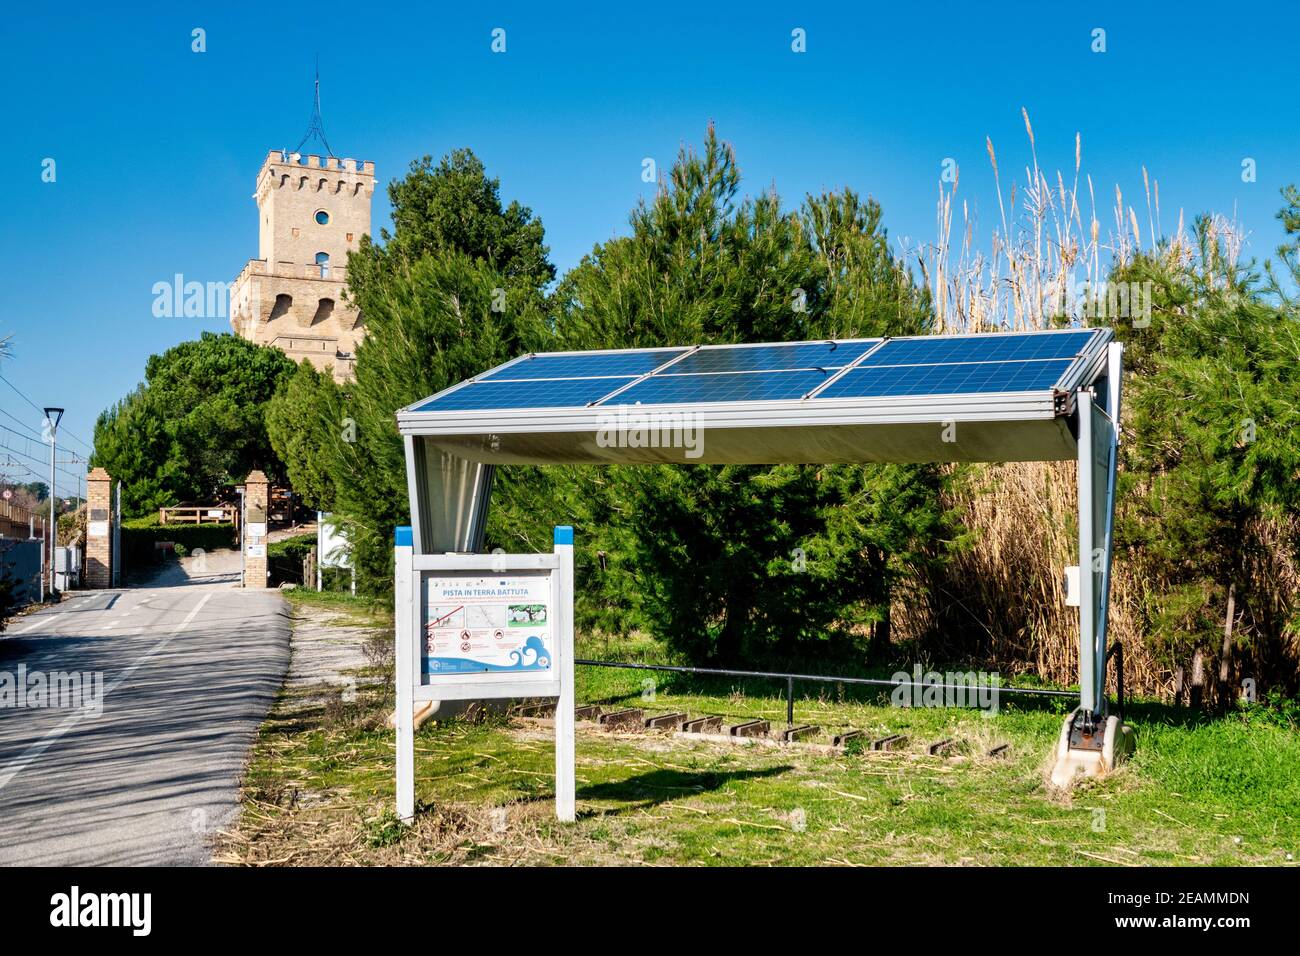 Point de stationnement de vélo alimenté par des panneaux de cellules solaires près de la Torre di Cerrano, Pineto, Italie Banque D'Images